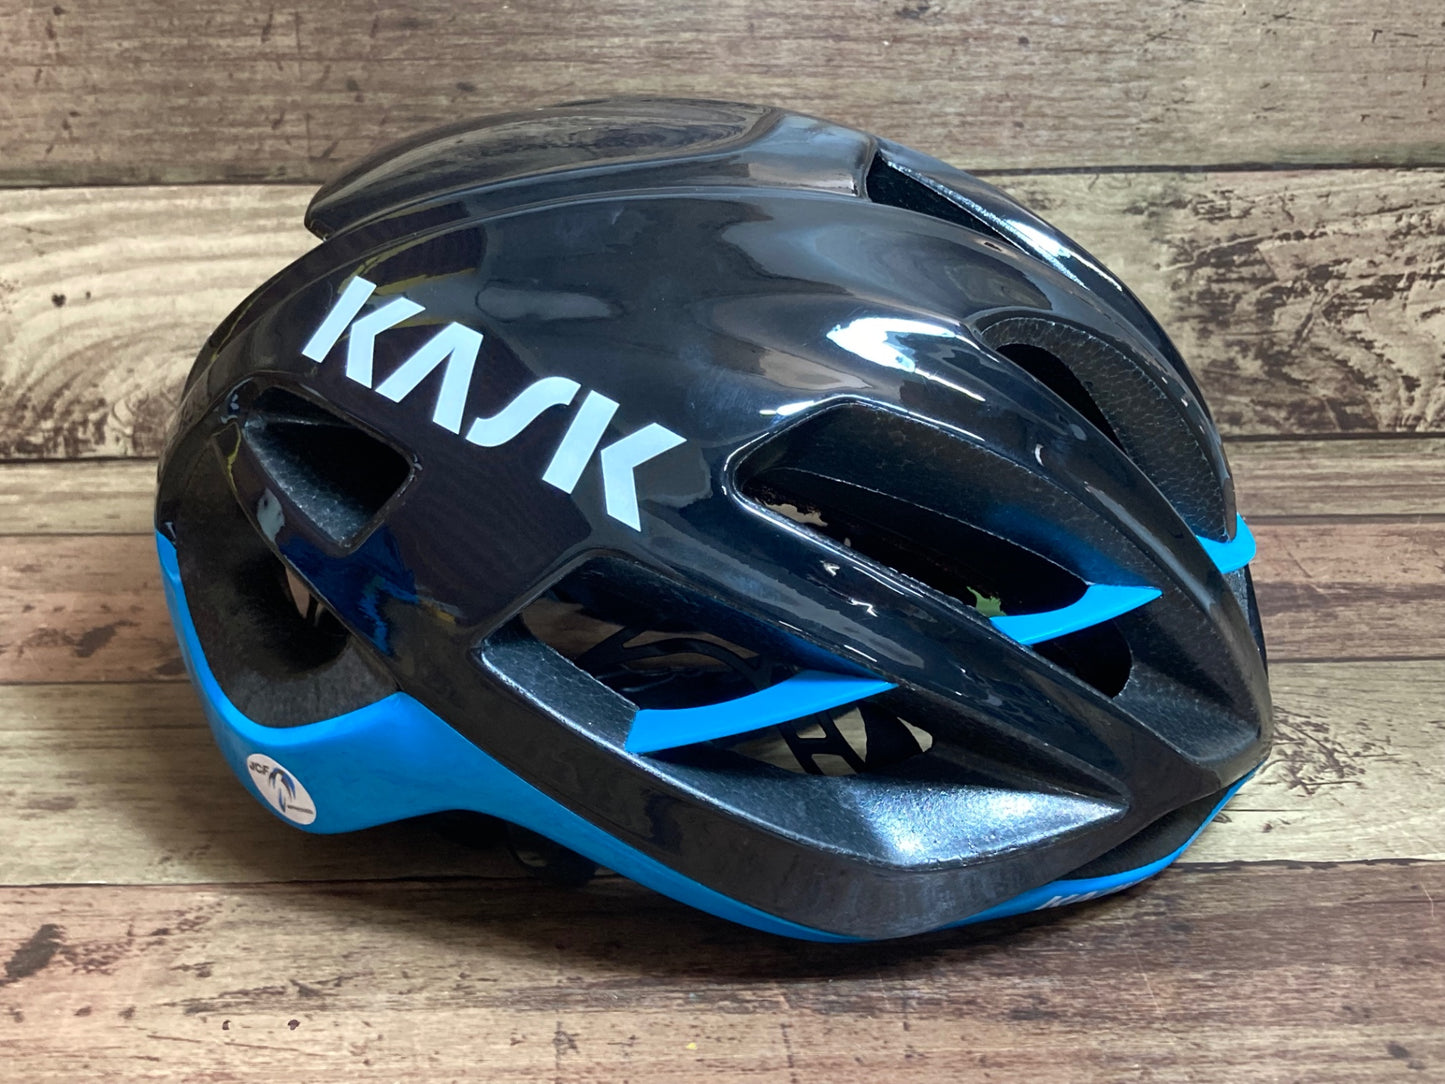 HR988 カスク KASK プロトーネ PROTONE ヘルメット 黒 50-56cm S 2021年9月製造